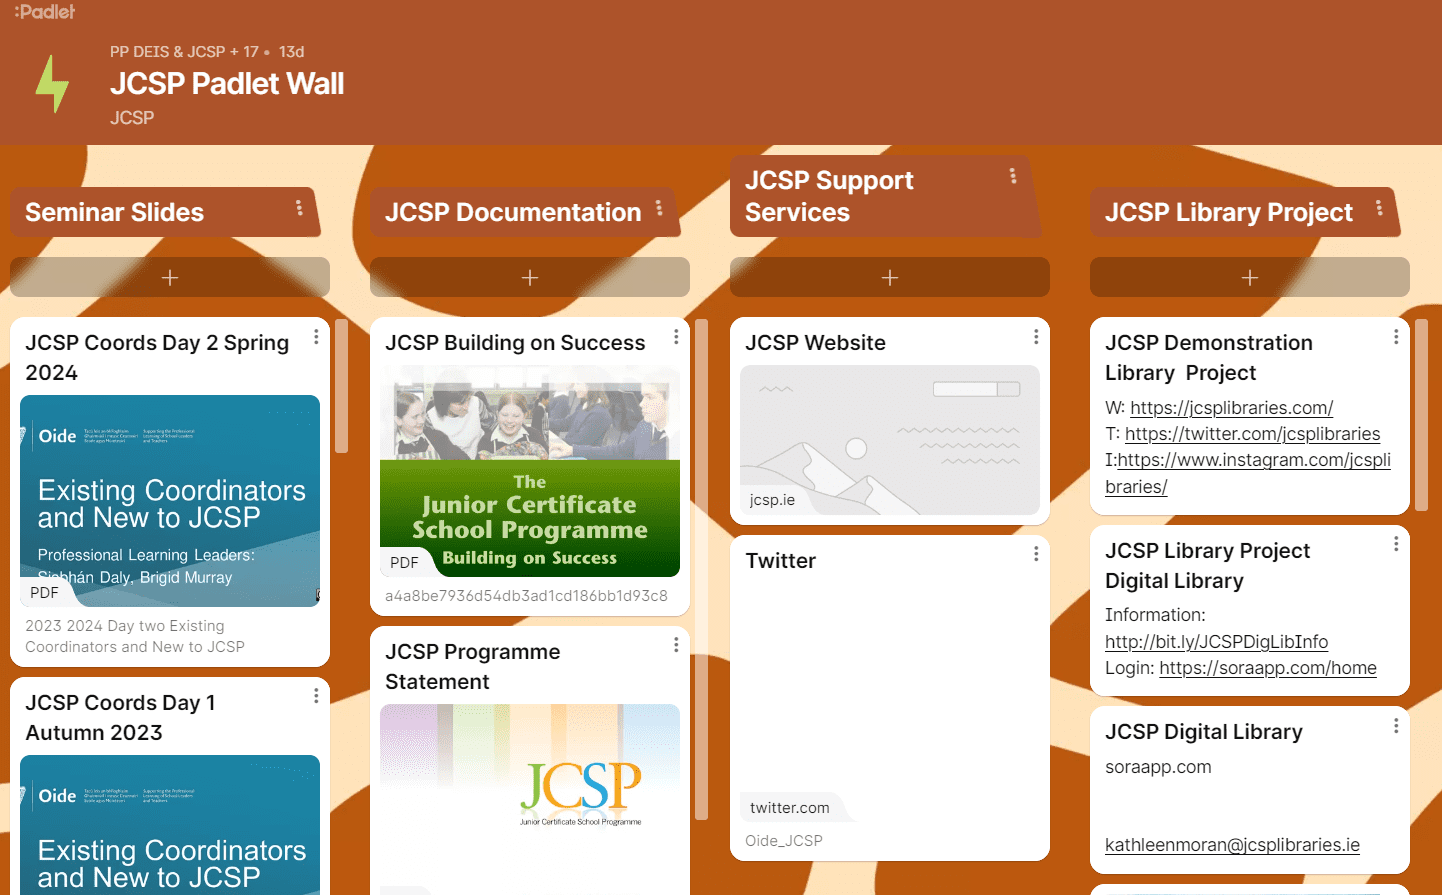 JCSP Padlet Wall